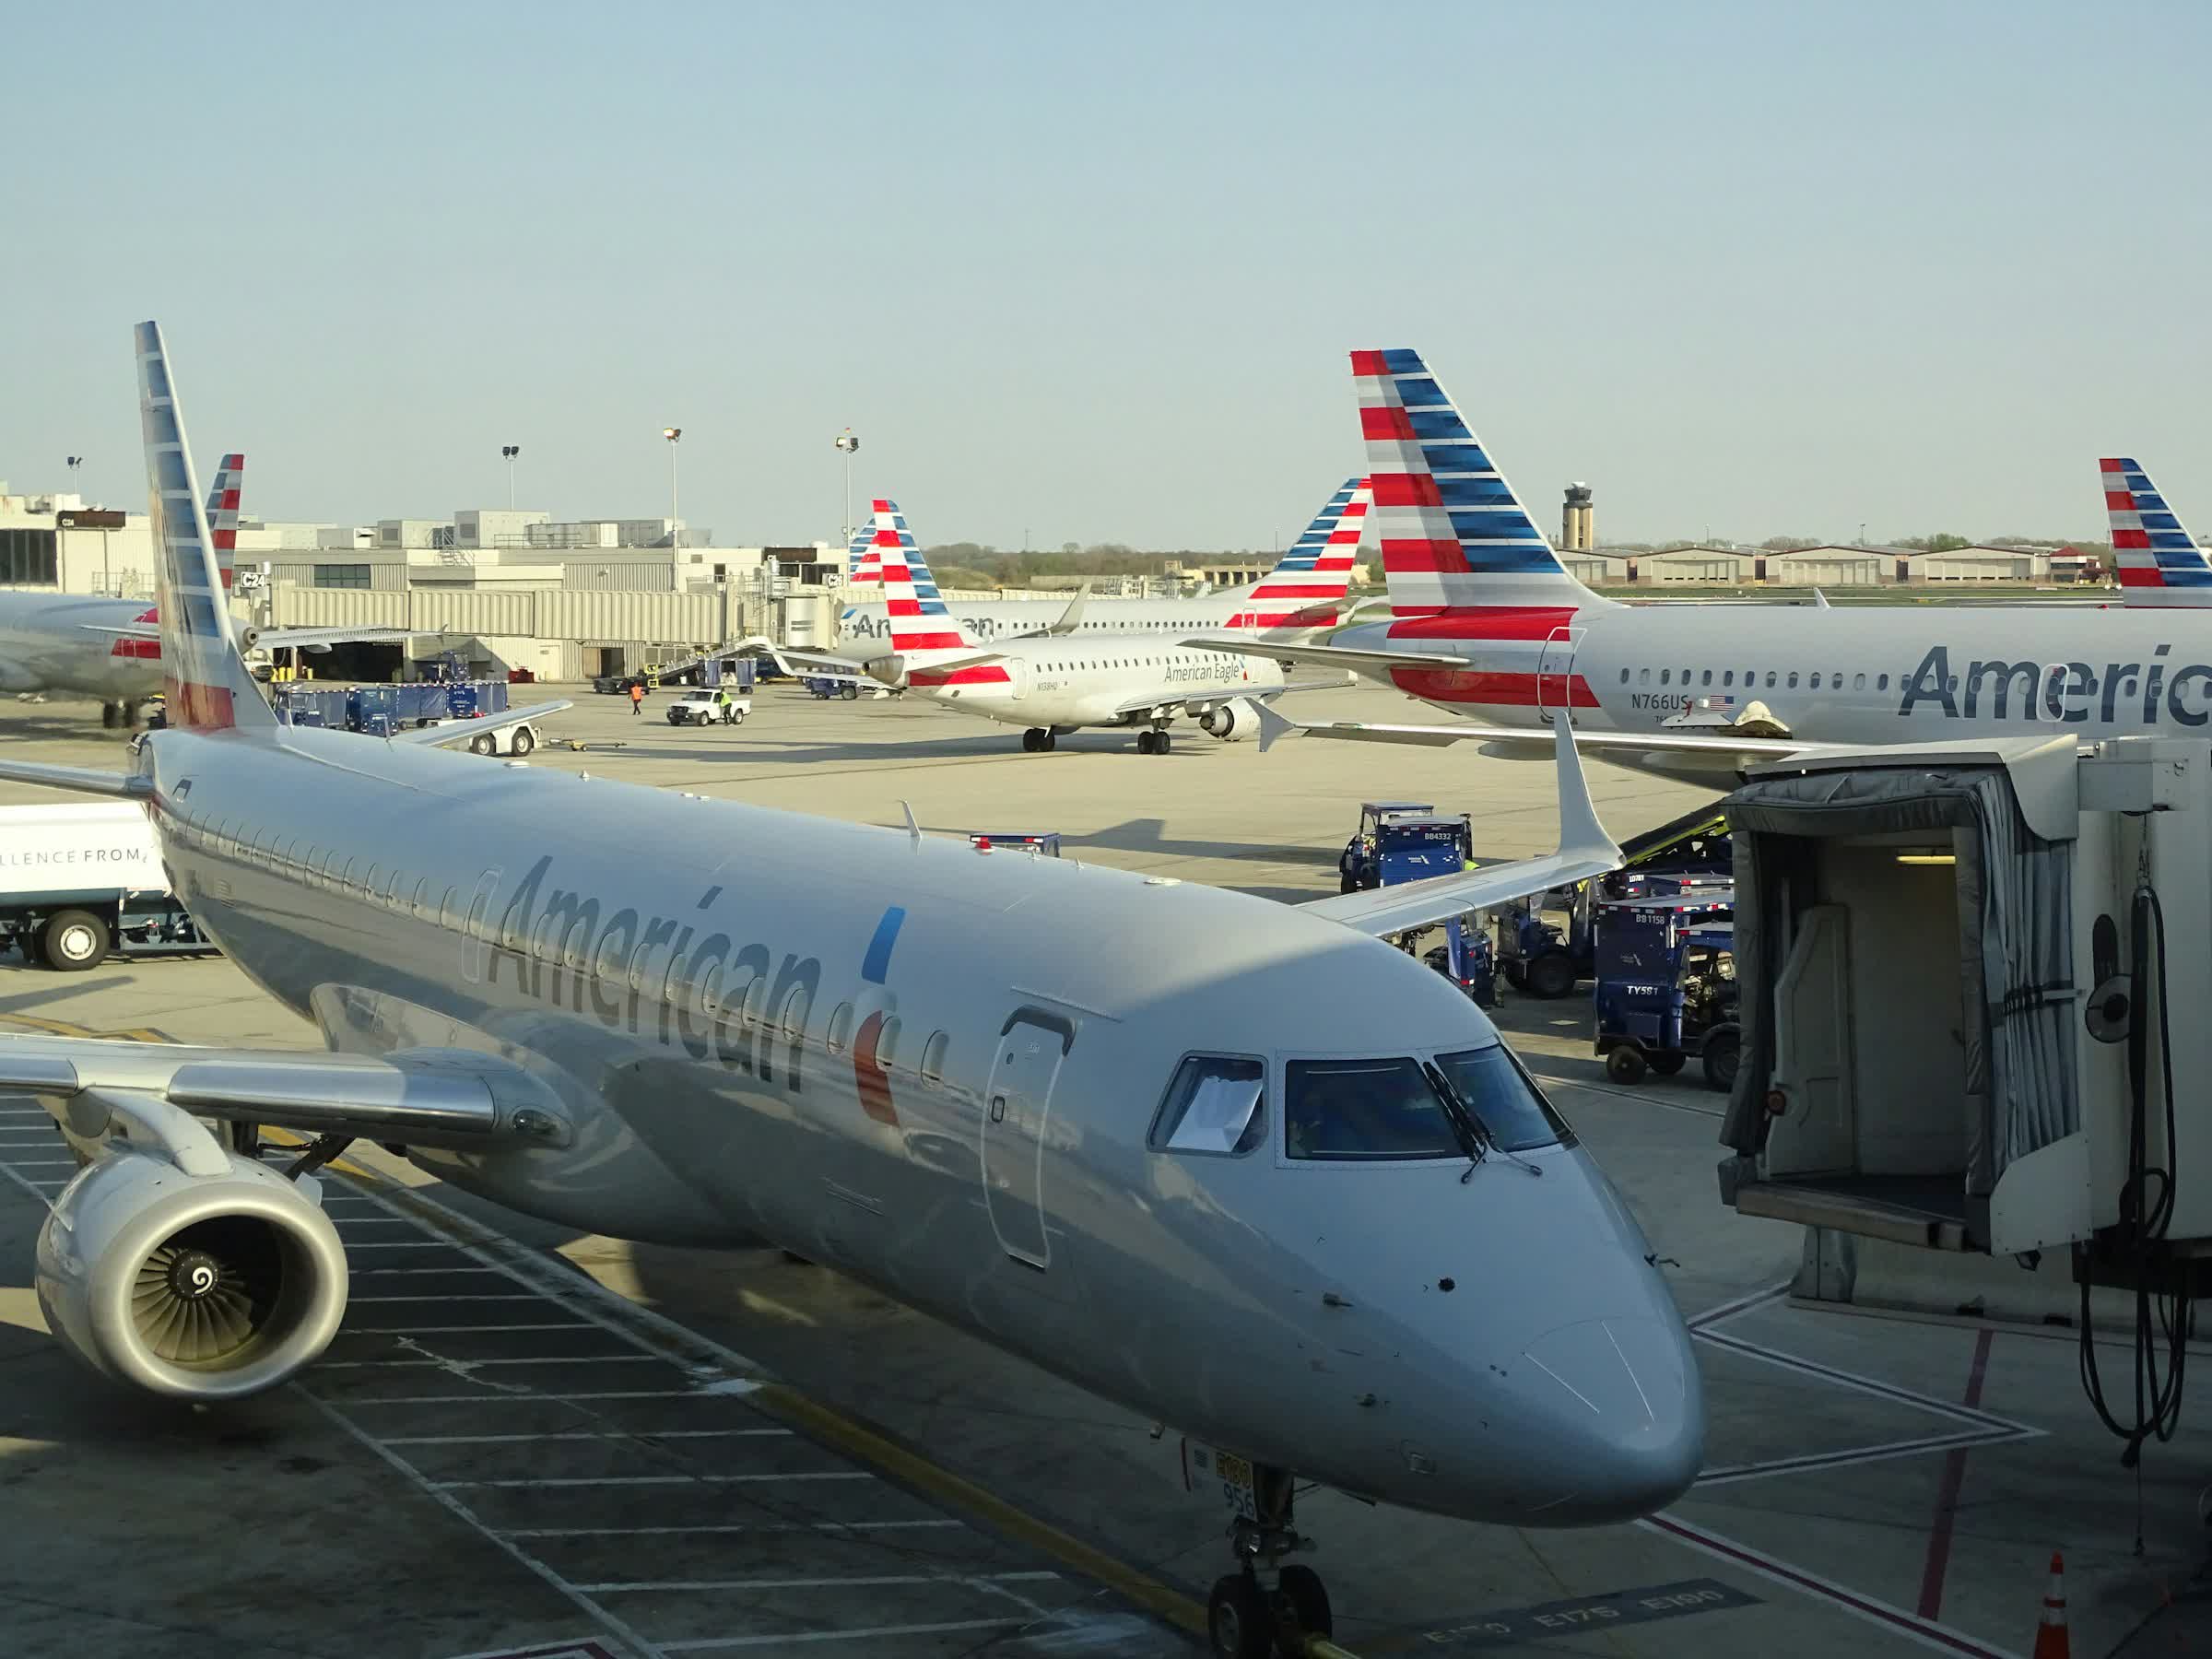 Incendio de computadora portátil en vuelo de American Airlines provoca evacuación de emergencia y heridos